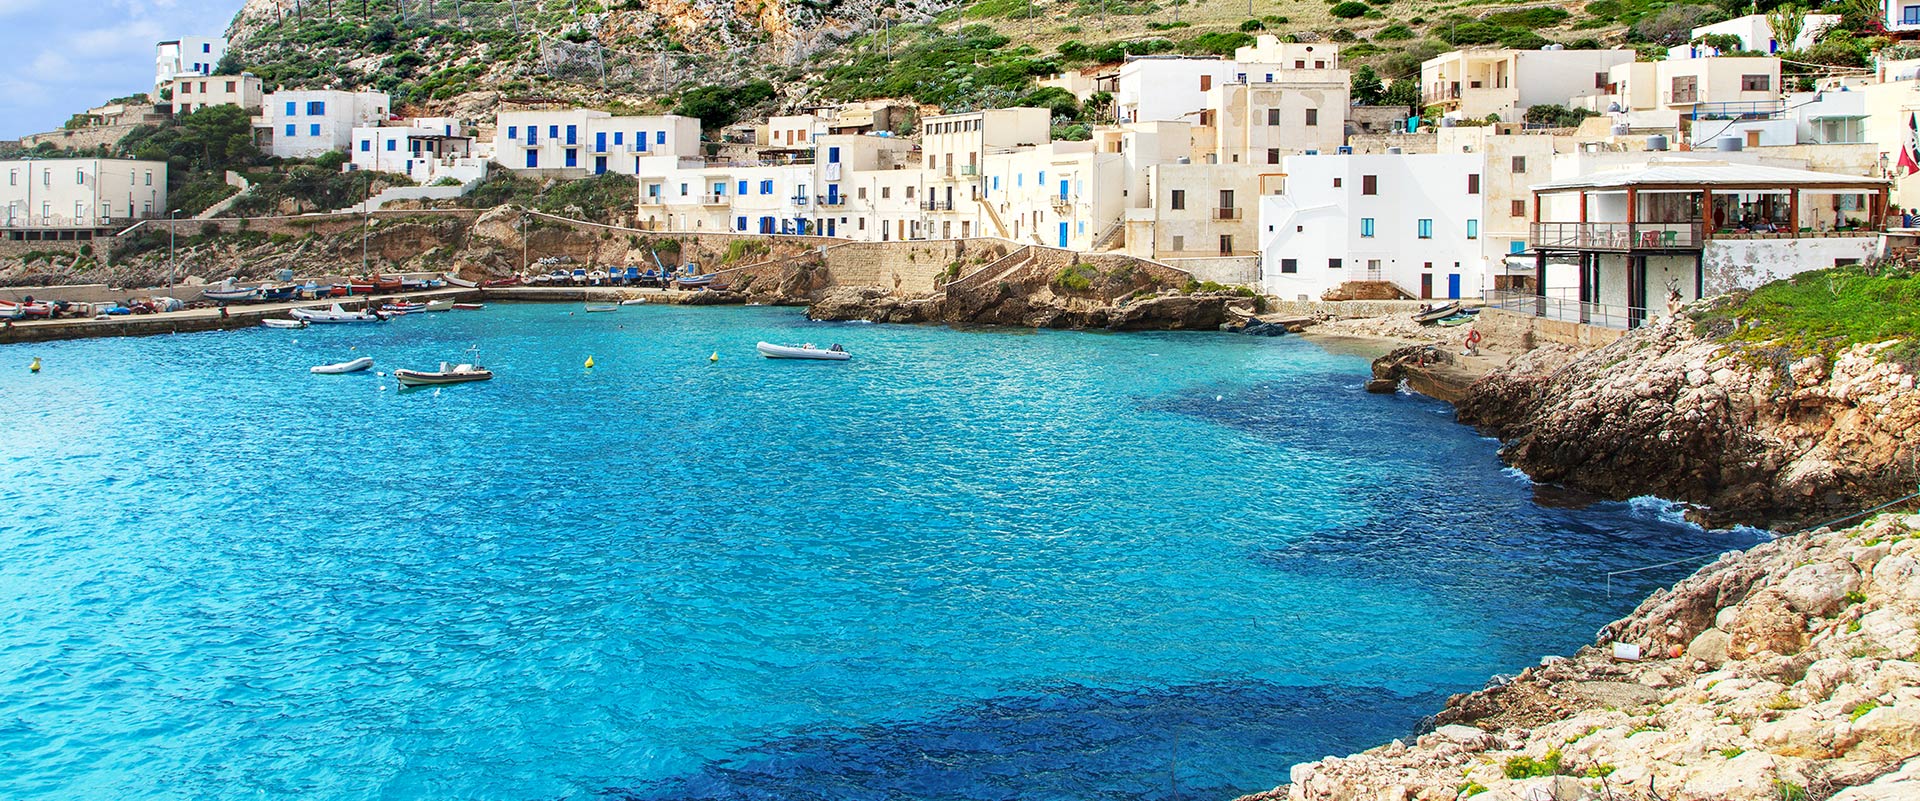 Isole Eolie, Sicilia: Crociere in barca a vela